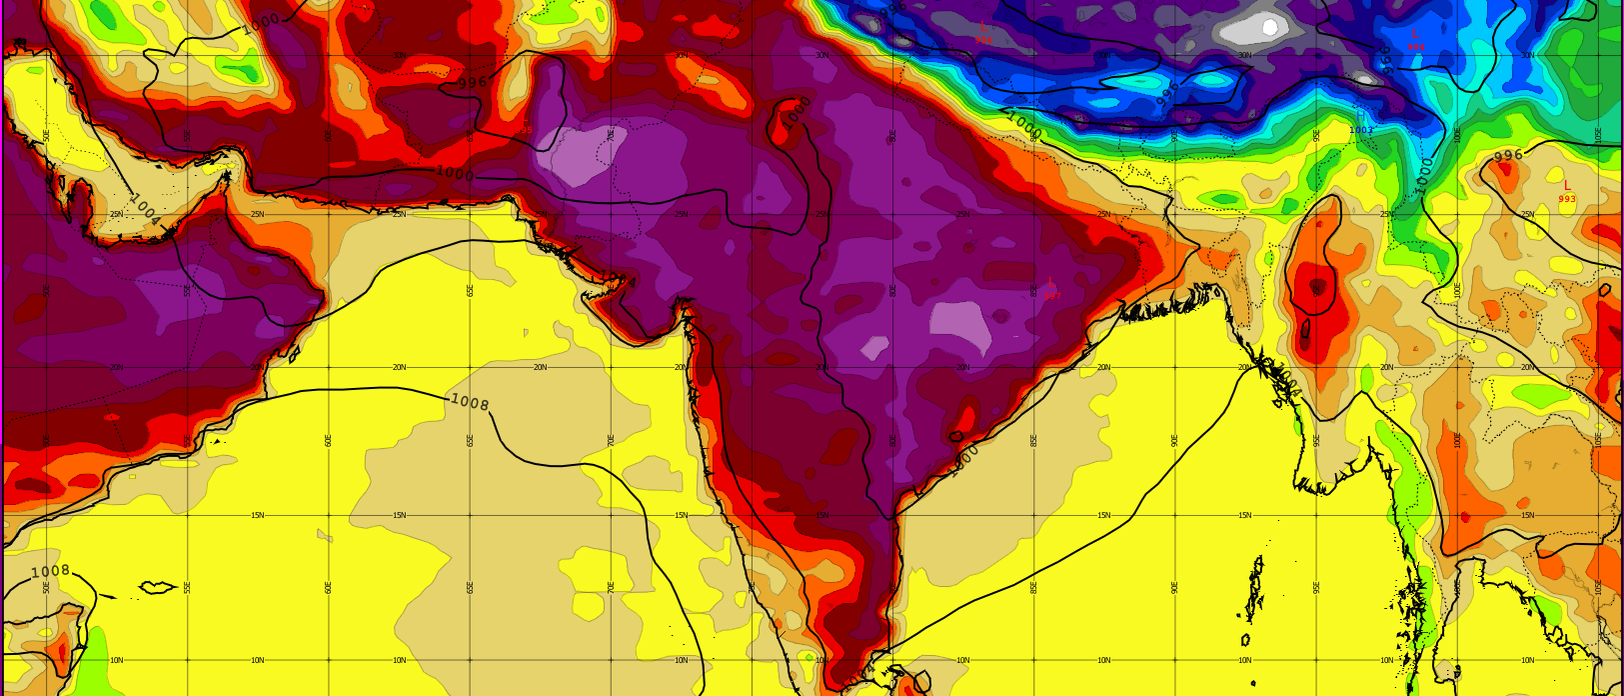 Hitzewelle in Indien - je pinker, desto heißer